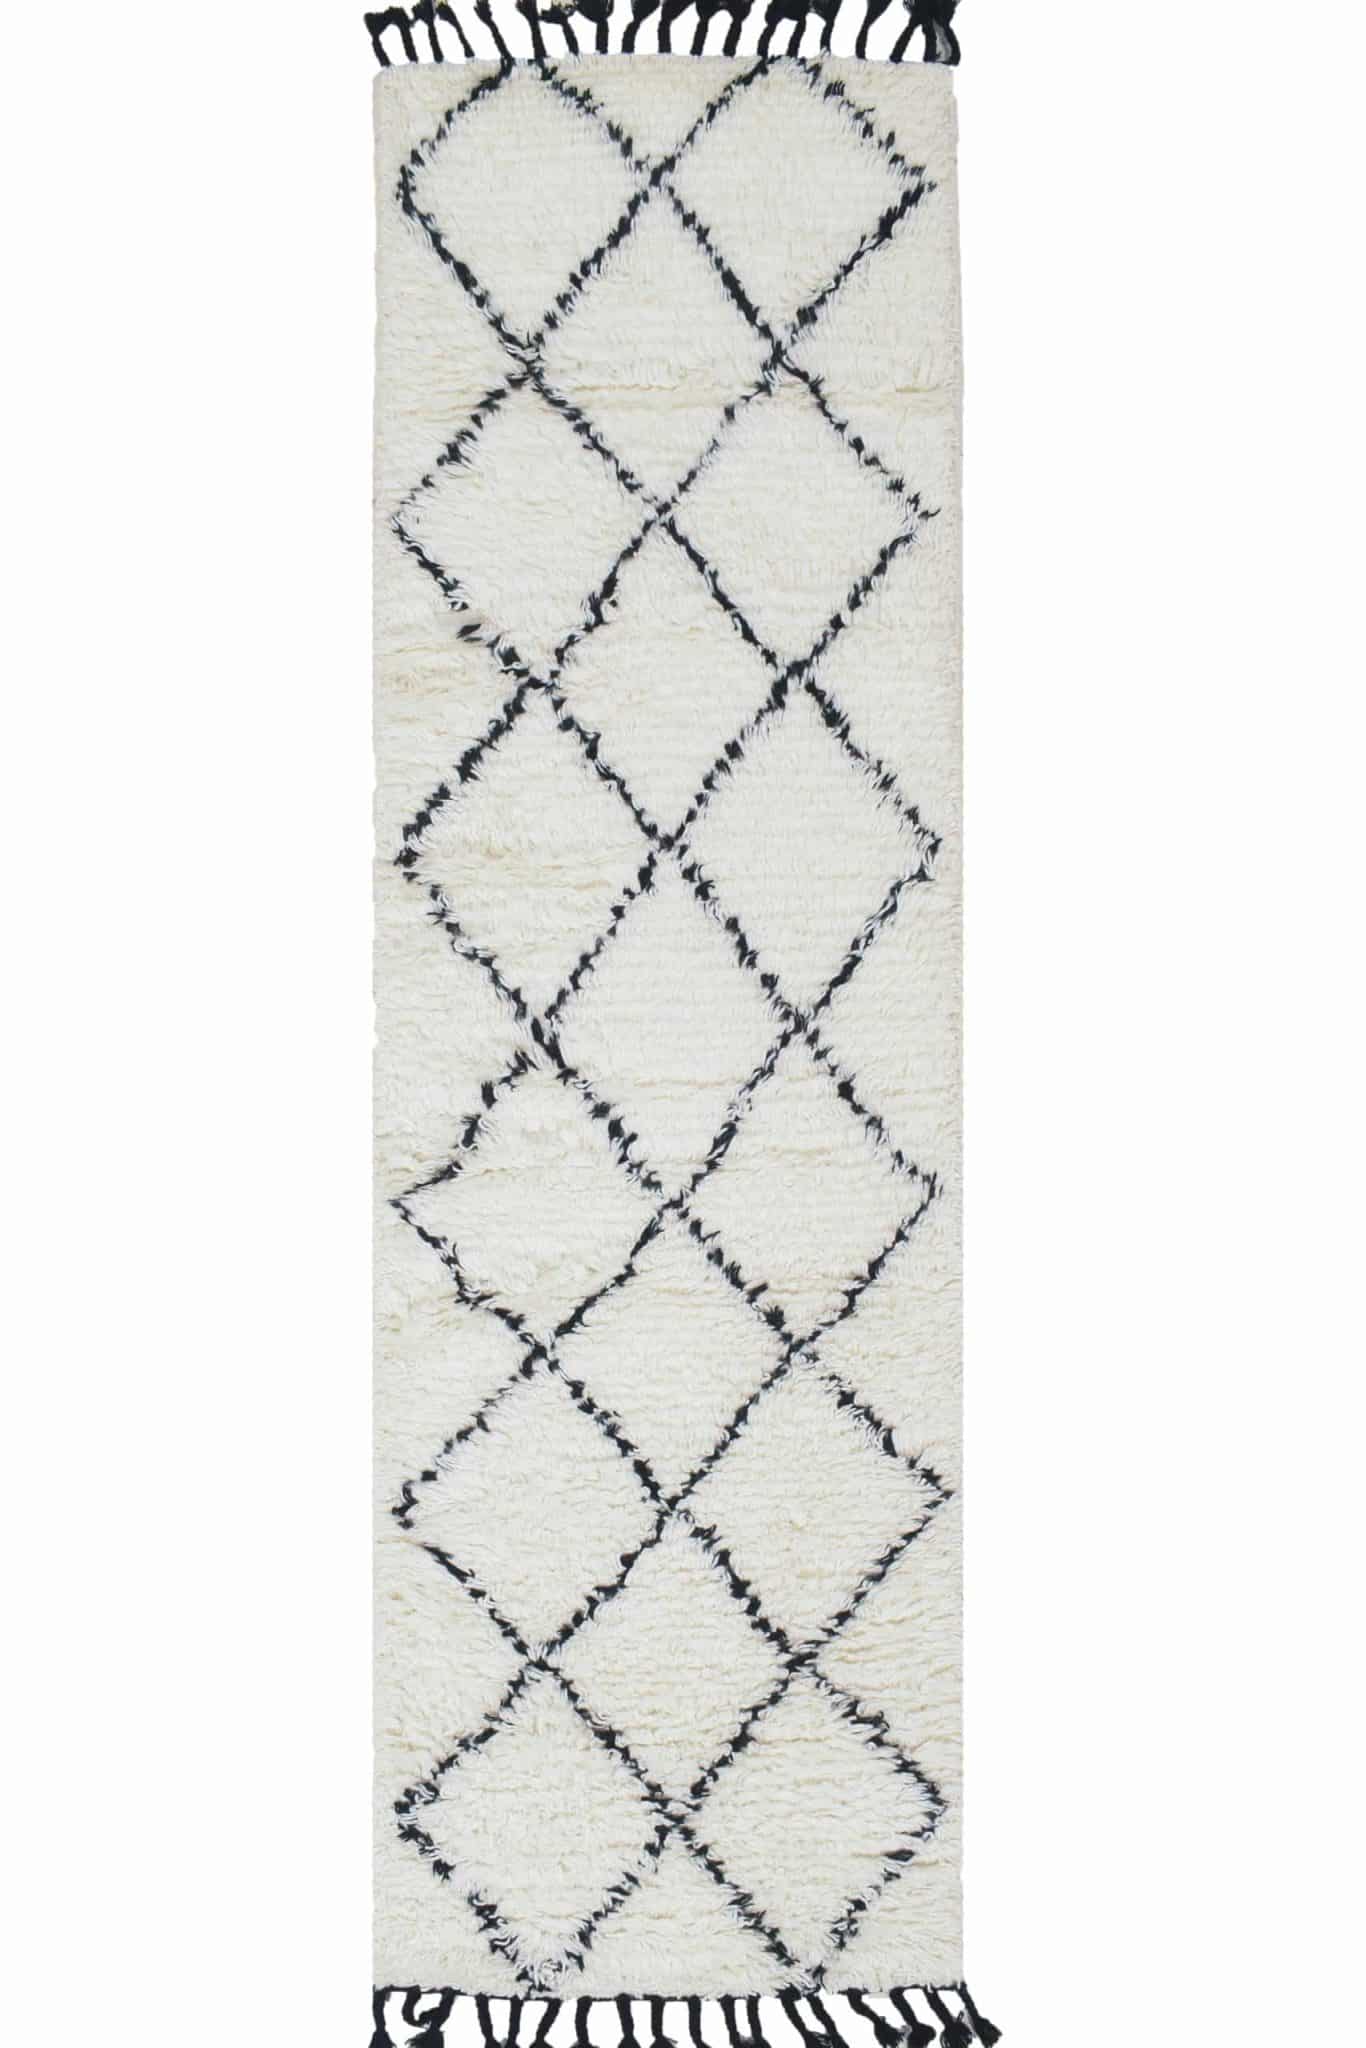 שטיח ברבר מרוקאי פרנז ראנר – שחור לבן